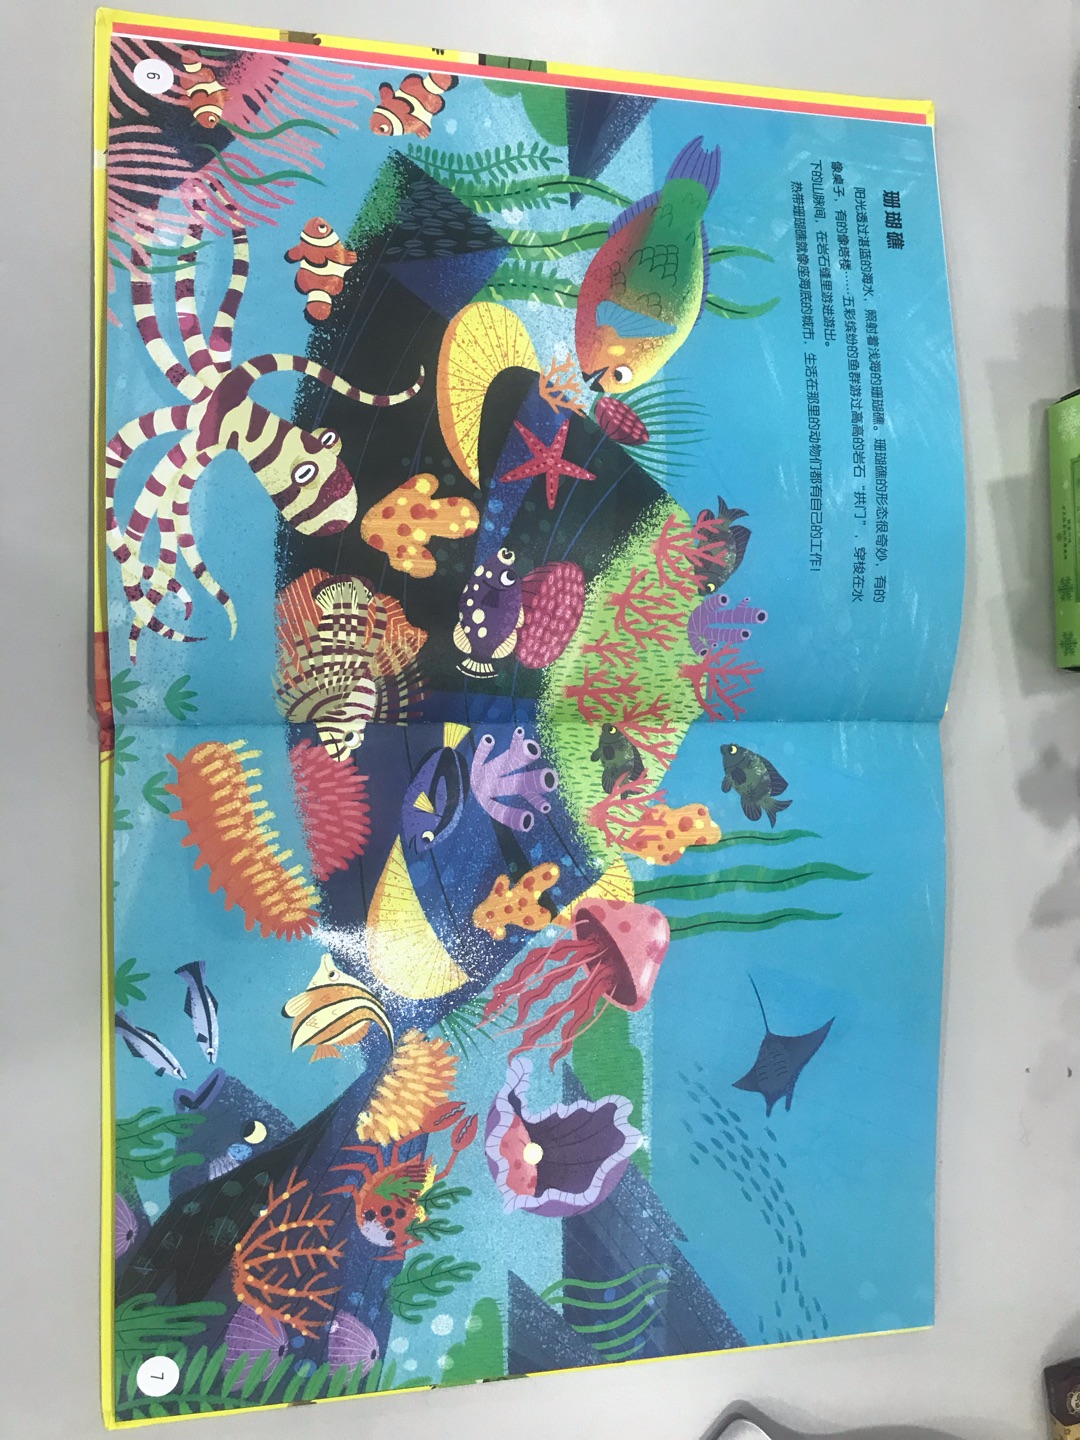 开本很大 很有分量的一本书，画风可爱活泼 颜色亮丽，内容新颖 分主题介绍动物，孩子特别喜欢！